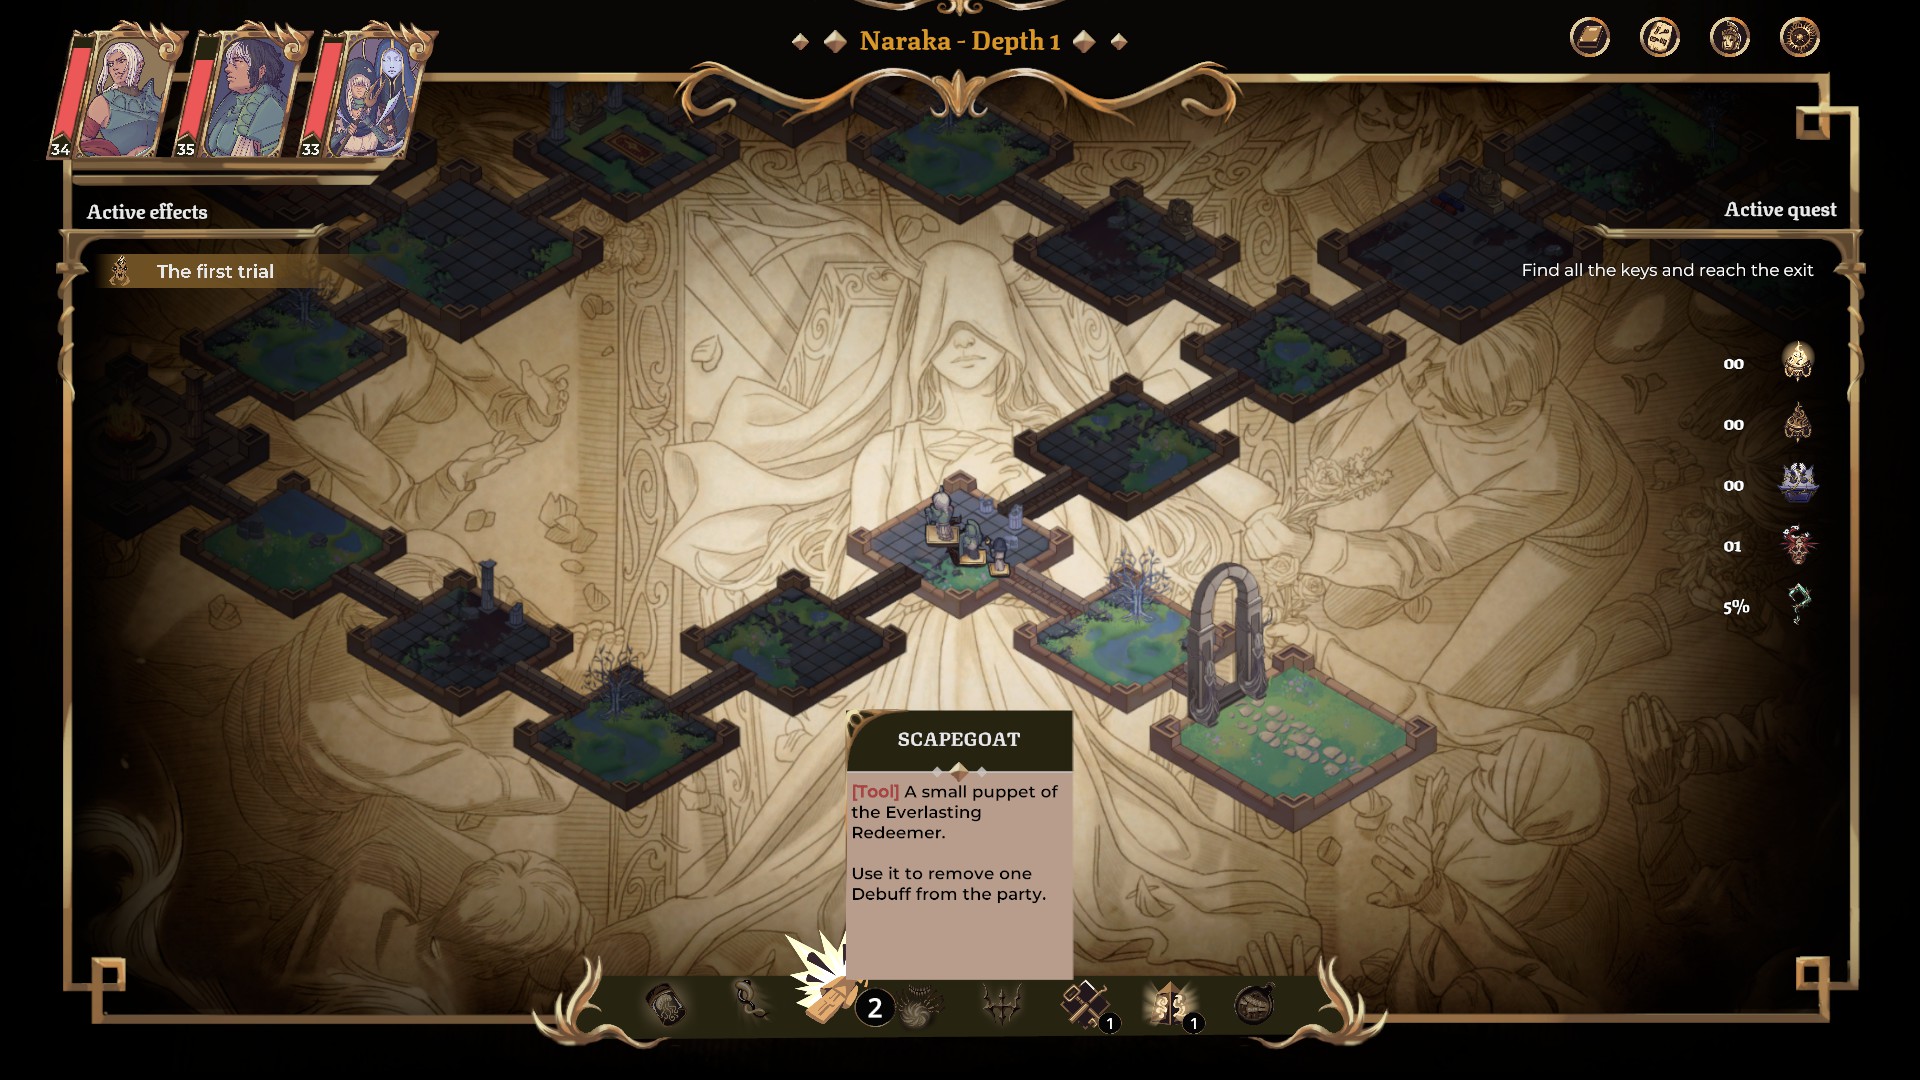 Imagem mostrando um mapa similar a um jogo de tabuleiro